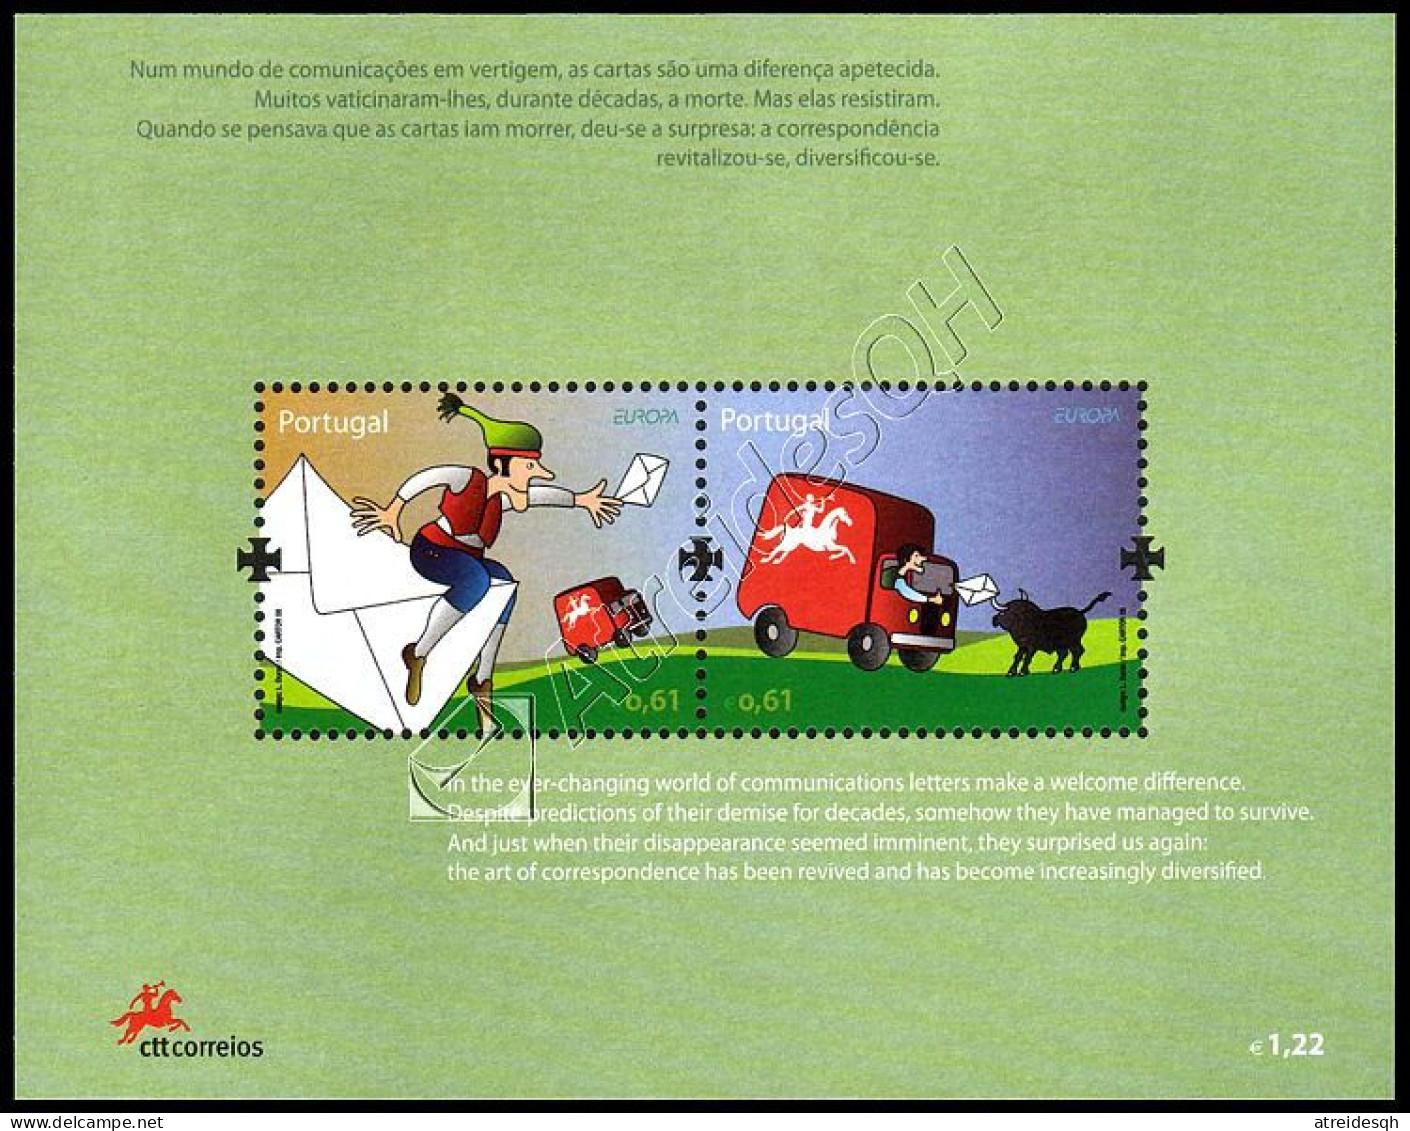 [Q] Portogallo-Azzorre- Madeira / Portugal-Azores-Madeira 2008: 3 Foglietti Europa - La Lettera / The Letter, 3 S/S ** - 2008